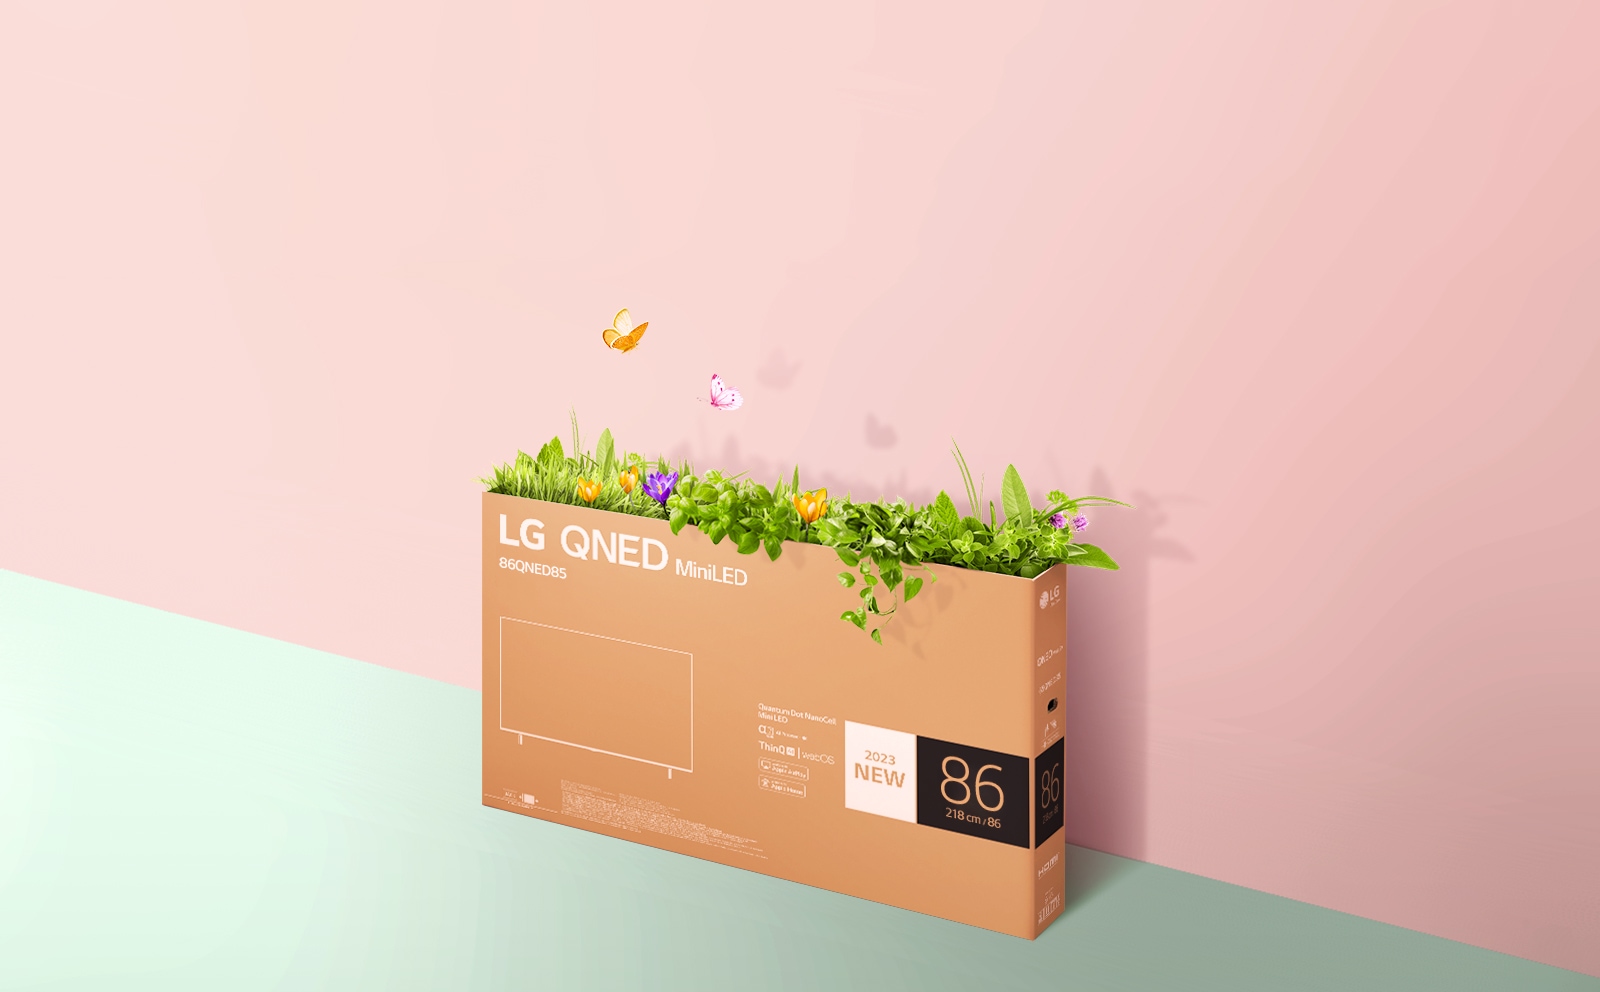 QNEDi kast on asetatud roosale, rohelisele taustale ning selle seest kasvab rohi ja tulevad välja liblikad. 